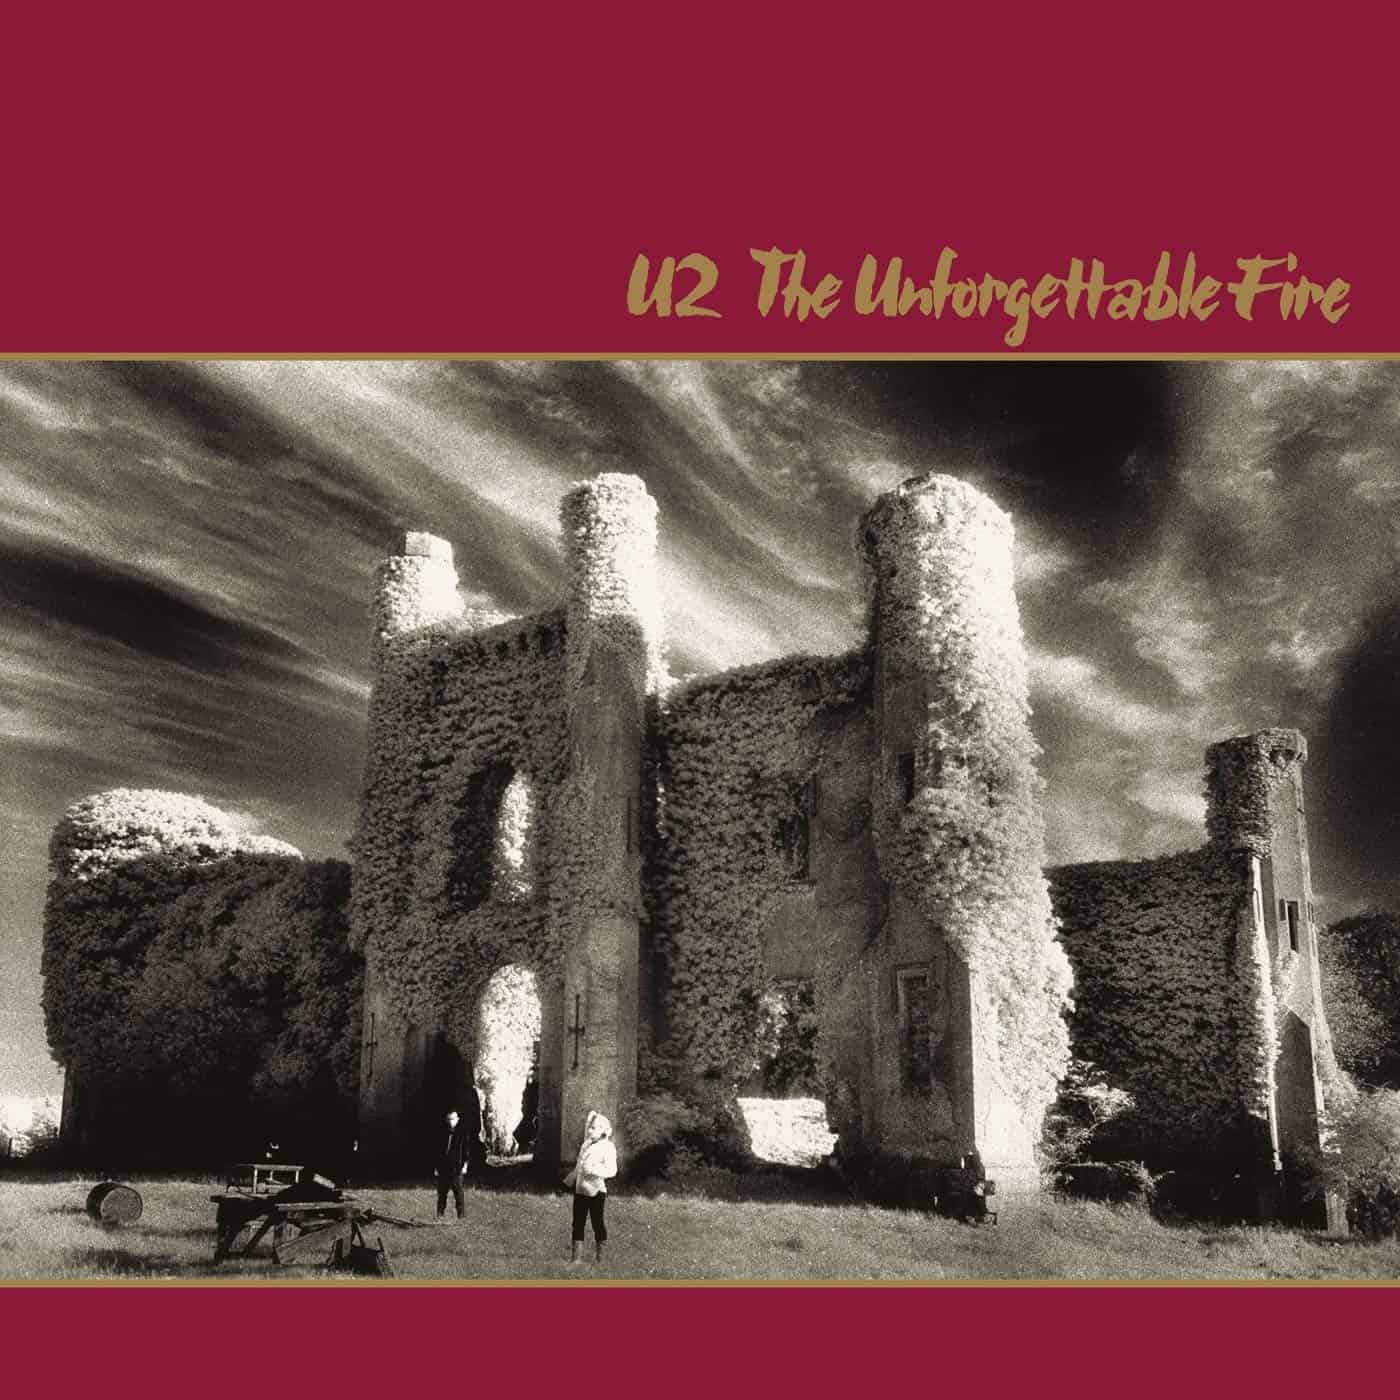 U2-The-Unforgettable-Fire-LP-vinyl-record-album-front